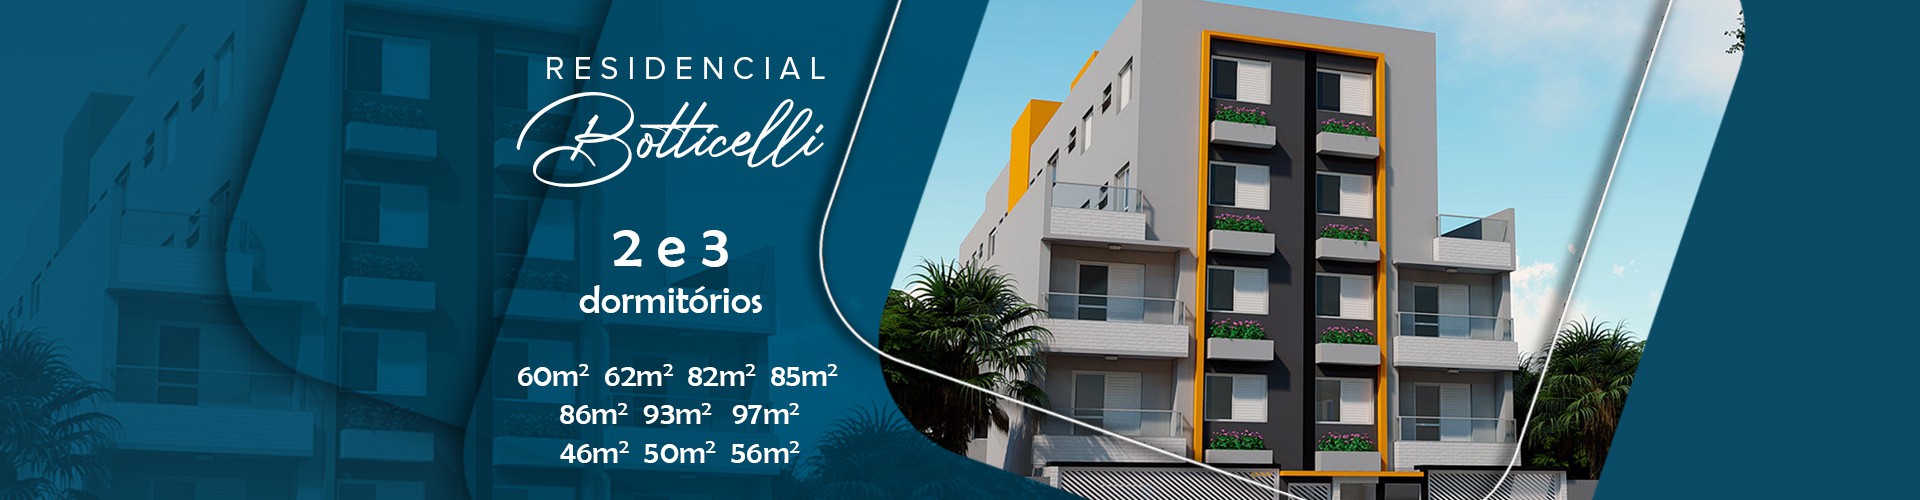 Residencial Botticelli - Apartamento na Vila Assis em Mauá